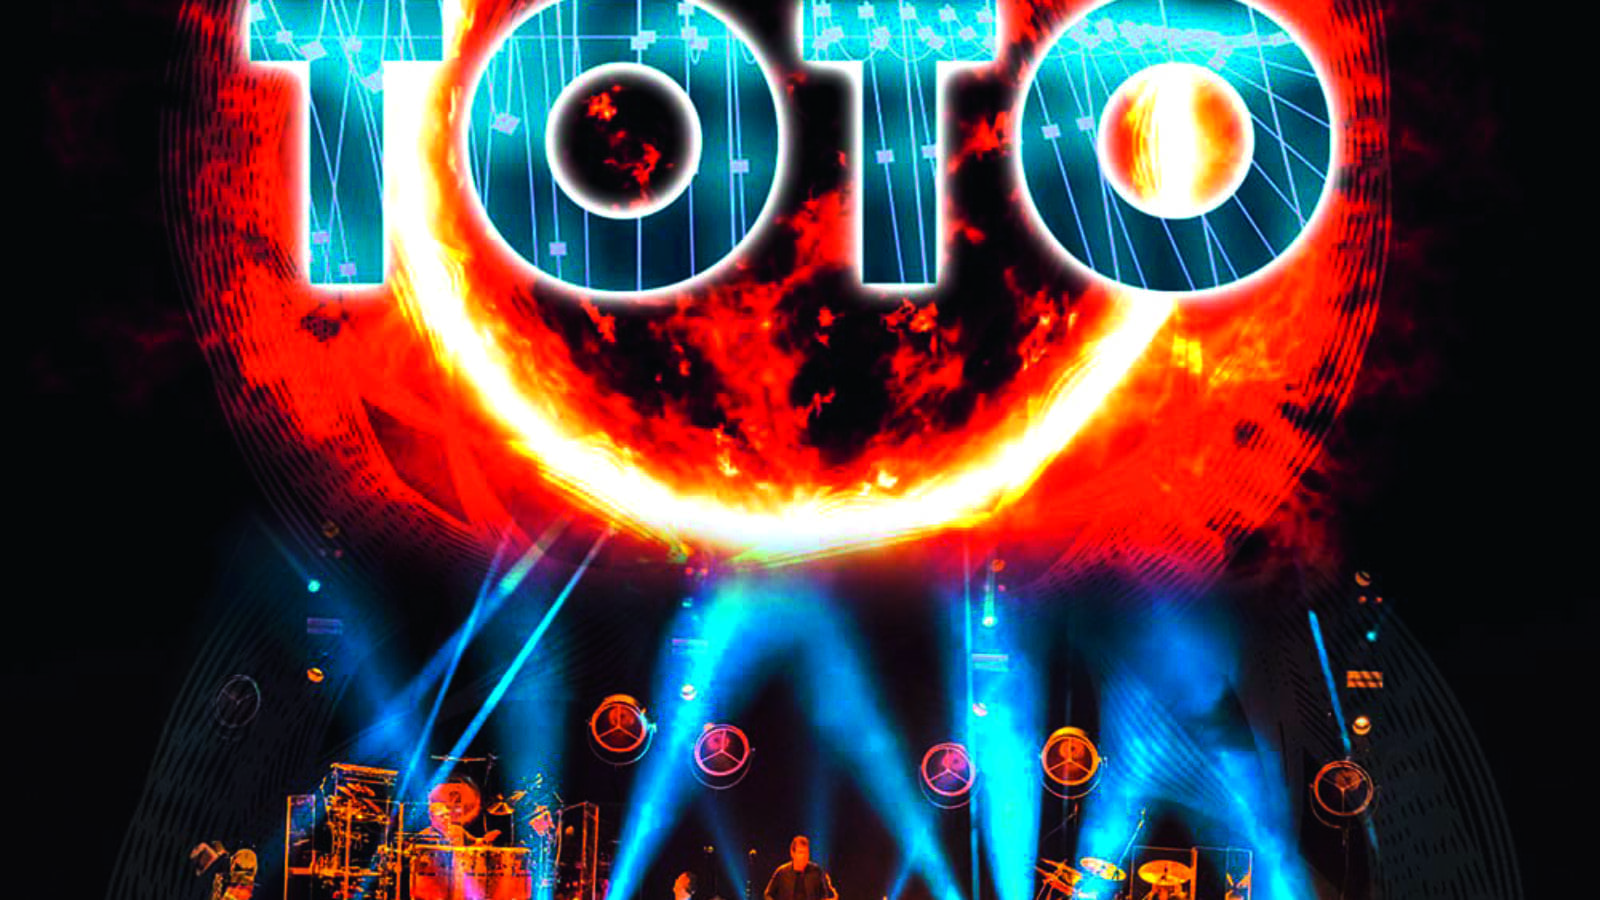 CD Tipp: Toto, 40 Tours Around The Sun